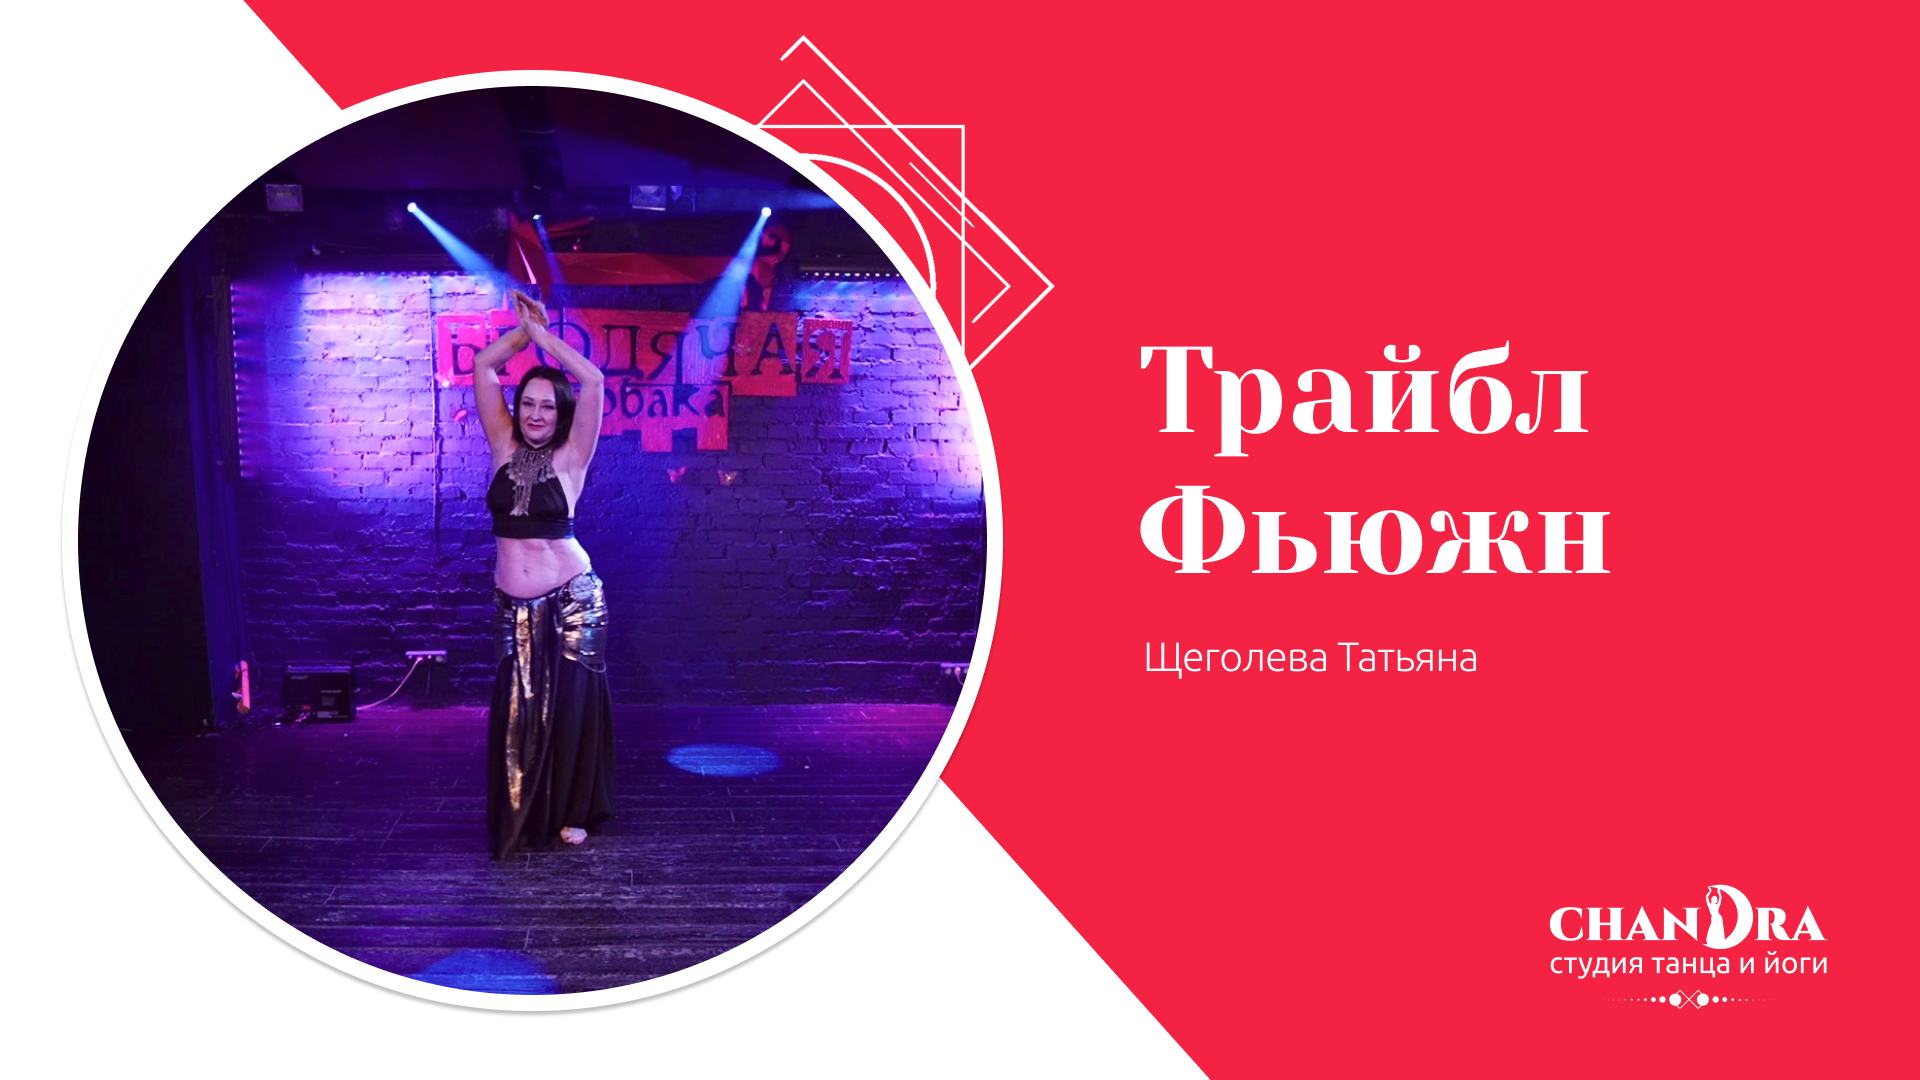 Студия танца и йоги в Новосибирске Chandra. Отчетный концерт 2024: Трайбл фьюжн, Татьяна Щеголева